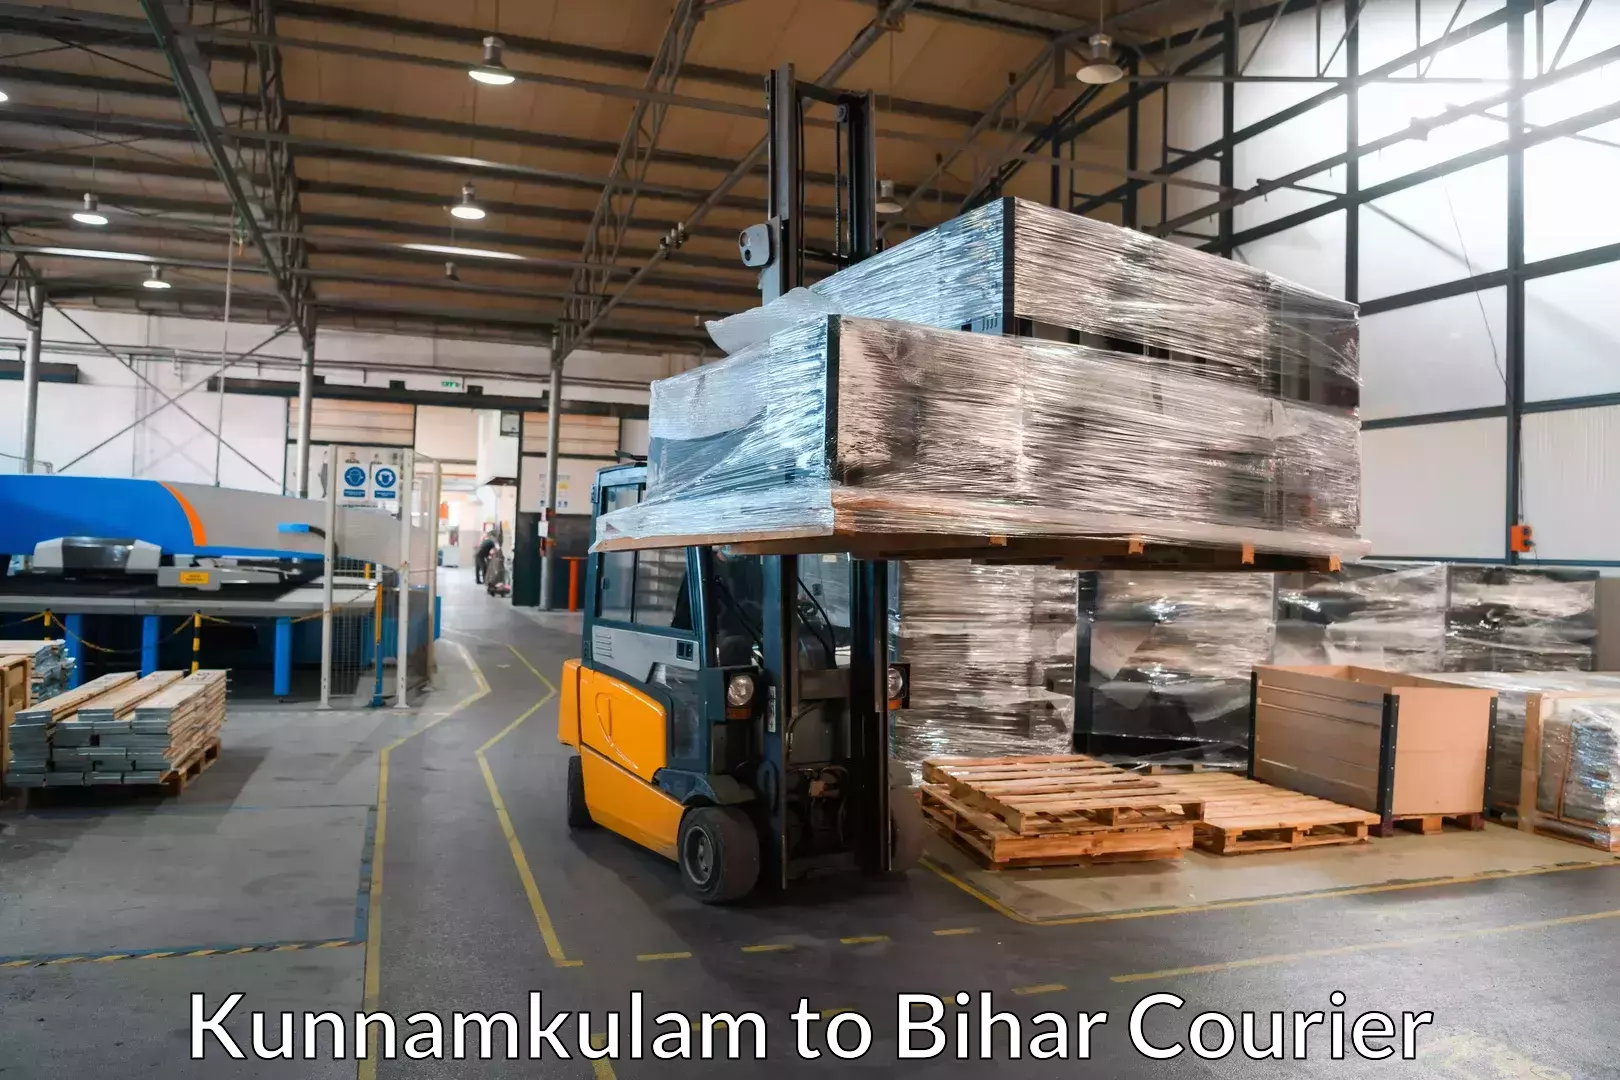 Reliable movers Kunnamkulam to Khizarsarai